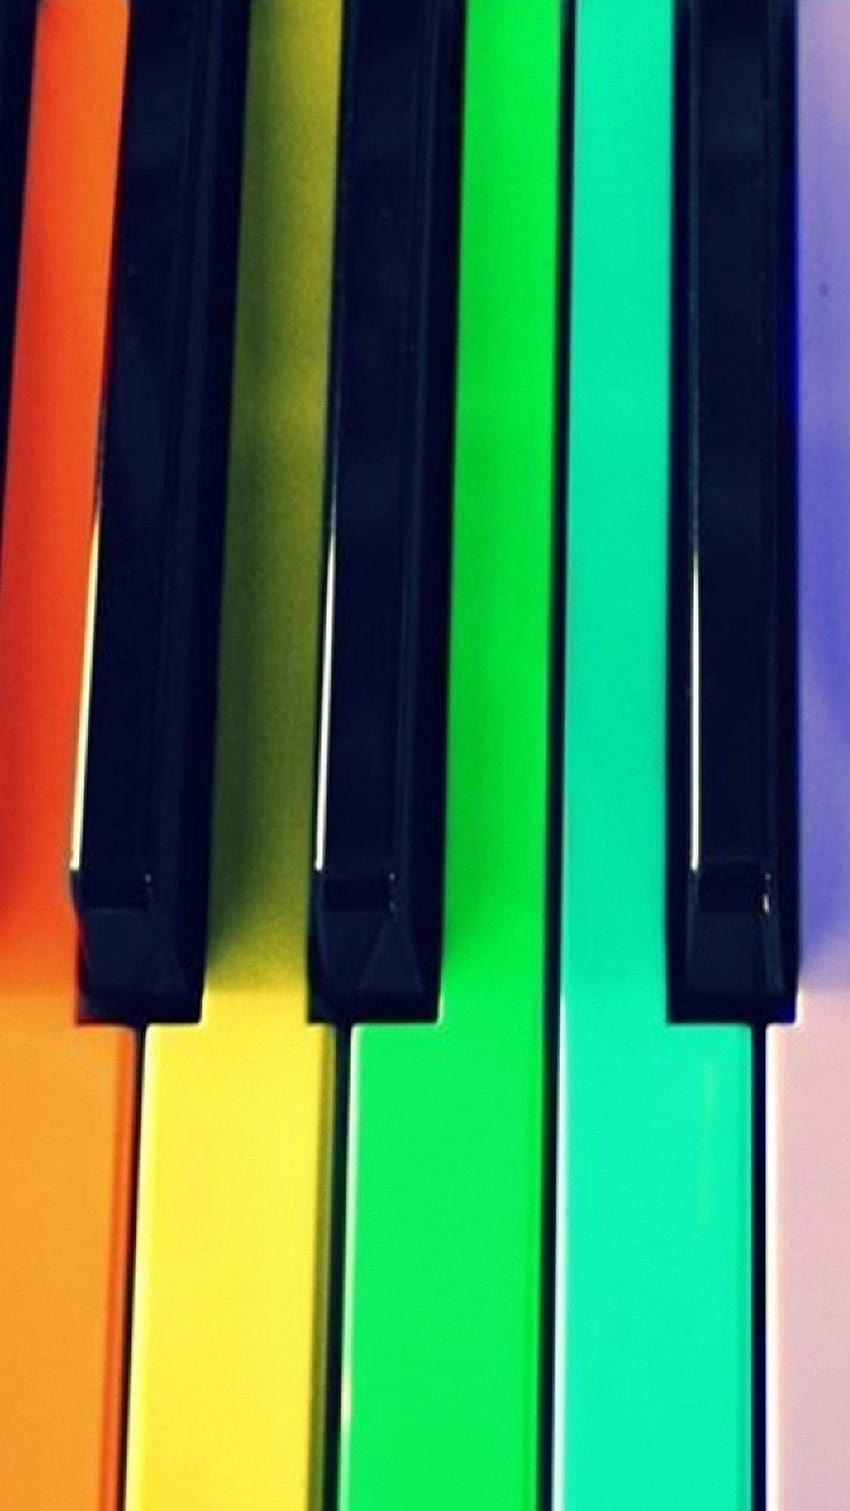 Bàn phím đàn piano là một công cụ rất quan trọng giúp bạn tiết kiệm thời gian học đàn. Với hàng tá các phím đàn dễ dàng nhấn điều chỉnh âm sắc, nhịp điệu, không khó hiểu như đàn piano cơ truyền thống. Hãy xem hình ảnh để khám phá mẫu bàn phím đàn piano đẹp mắt và chất lượng.